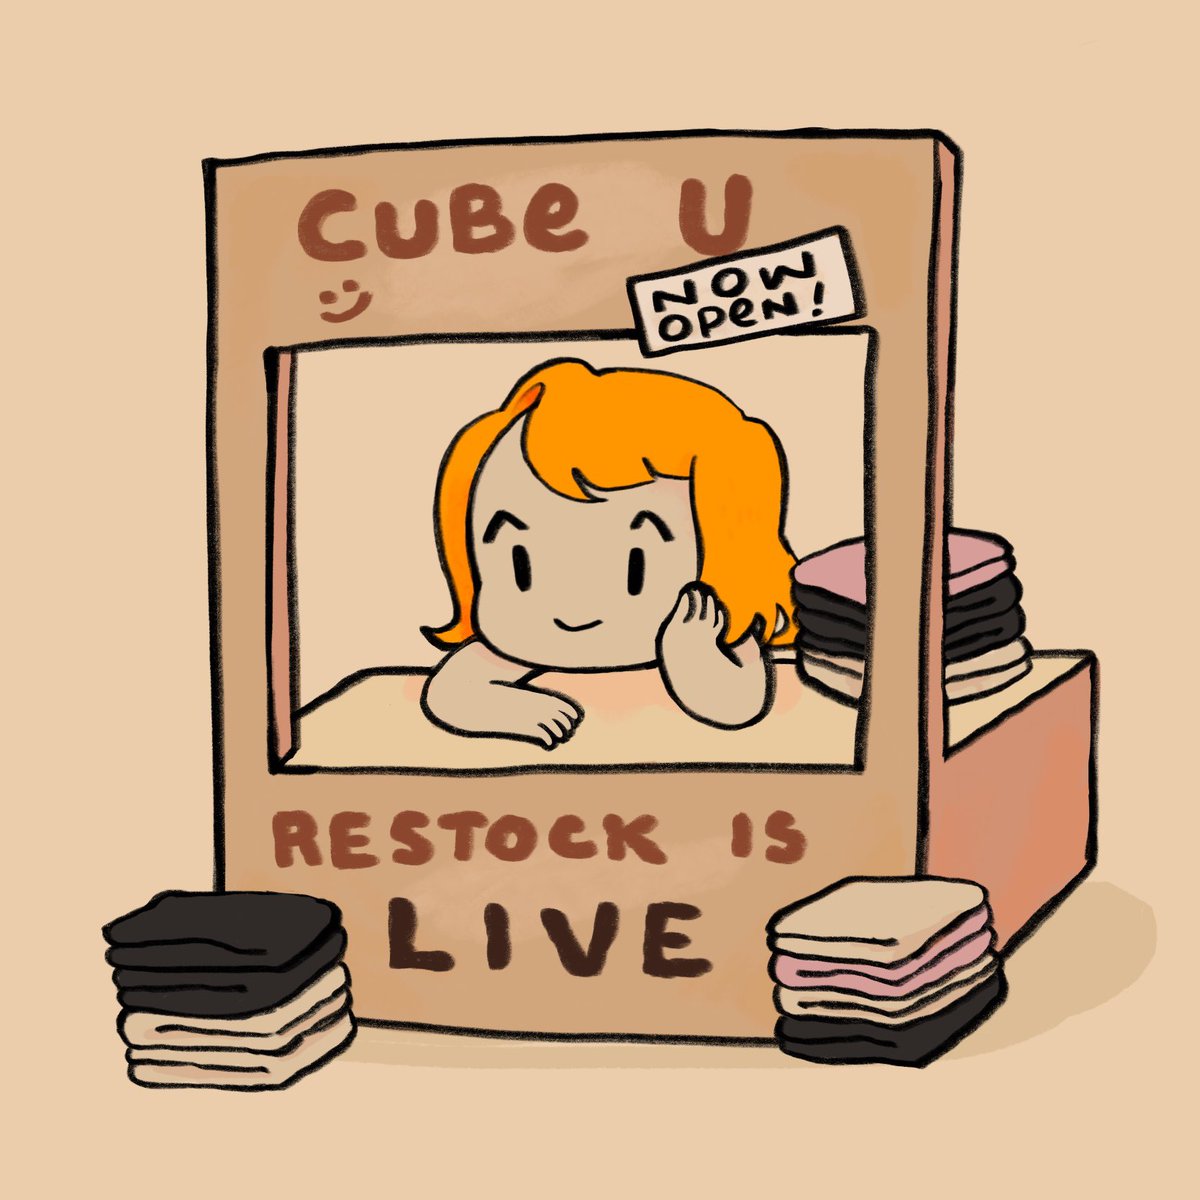 Go get stuff 😎🫰 cubeudesigns.com